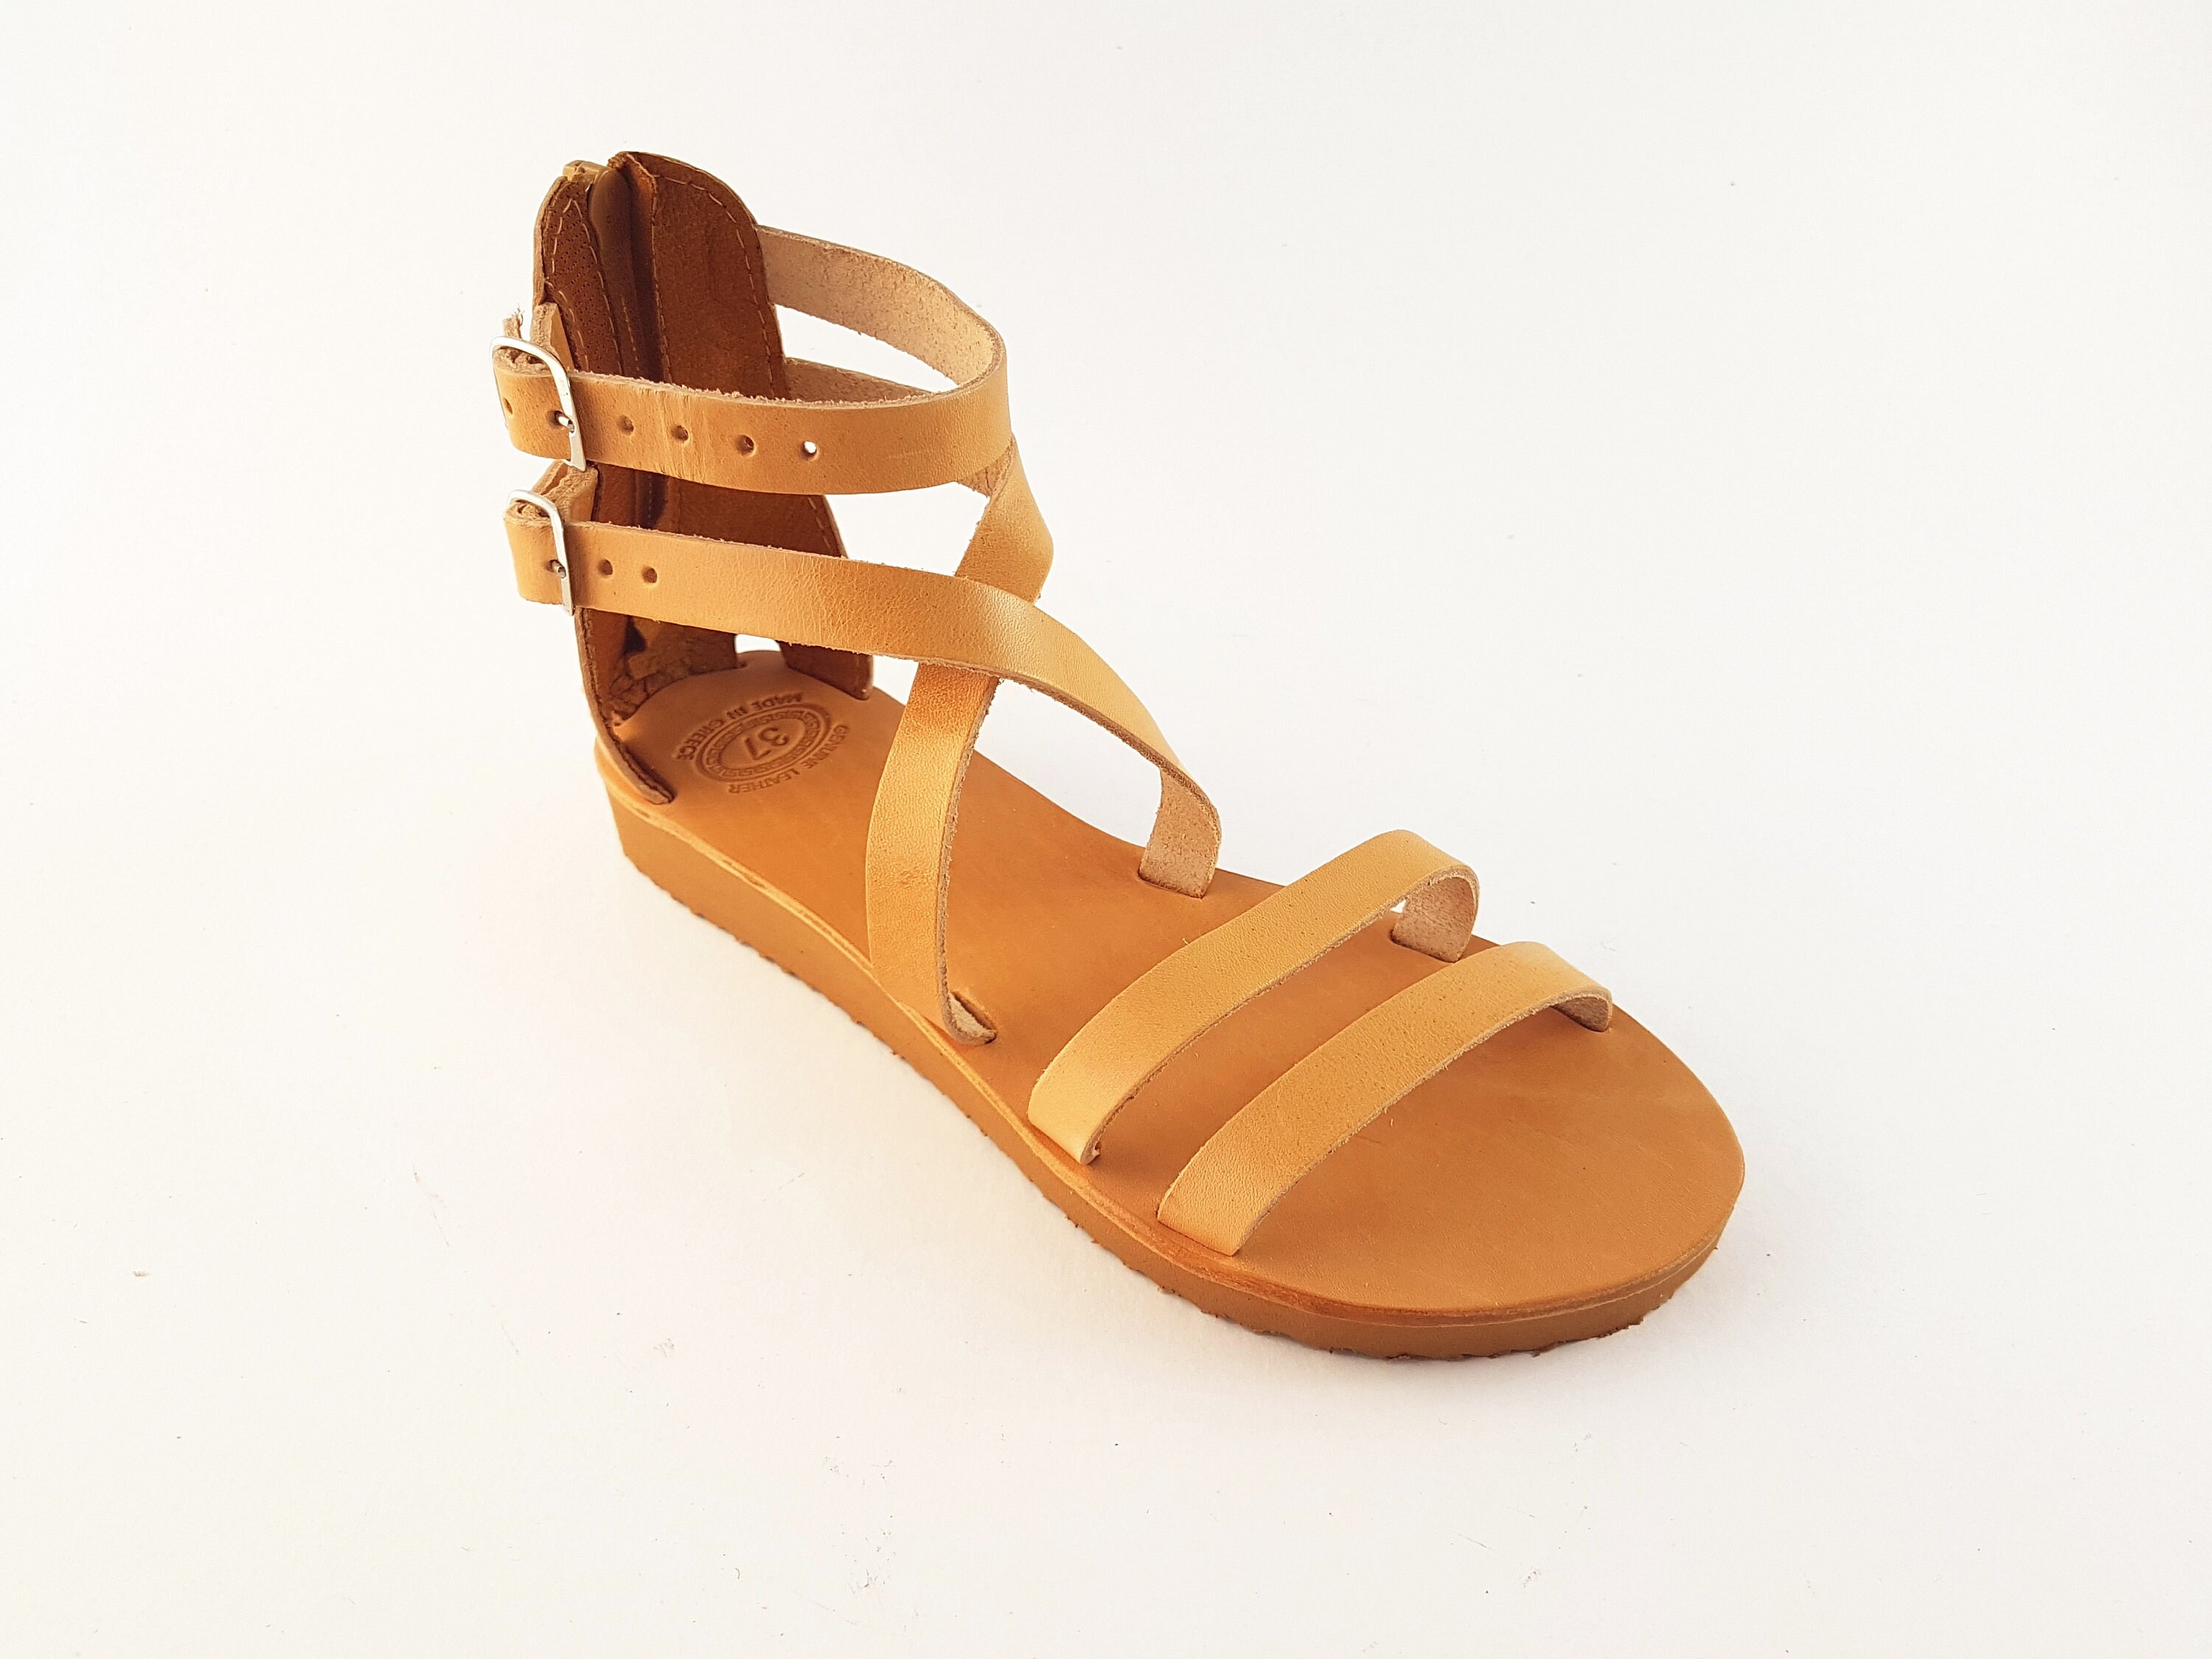 Greek Leather Sandals Women's Back Zip Platform Summer | Etsy